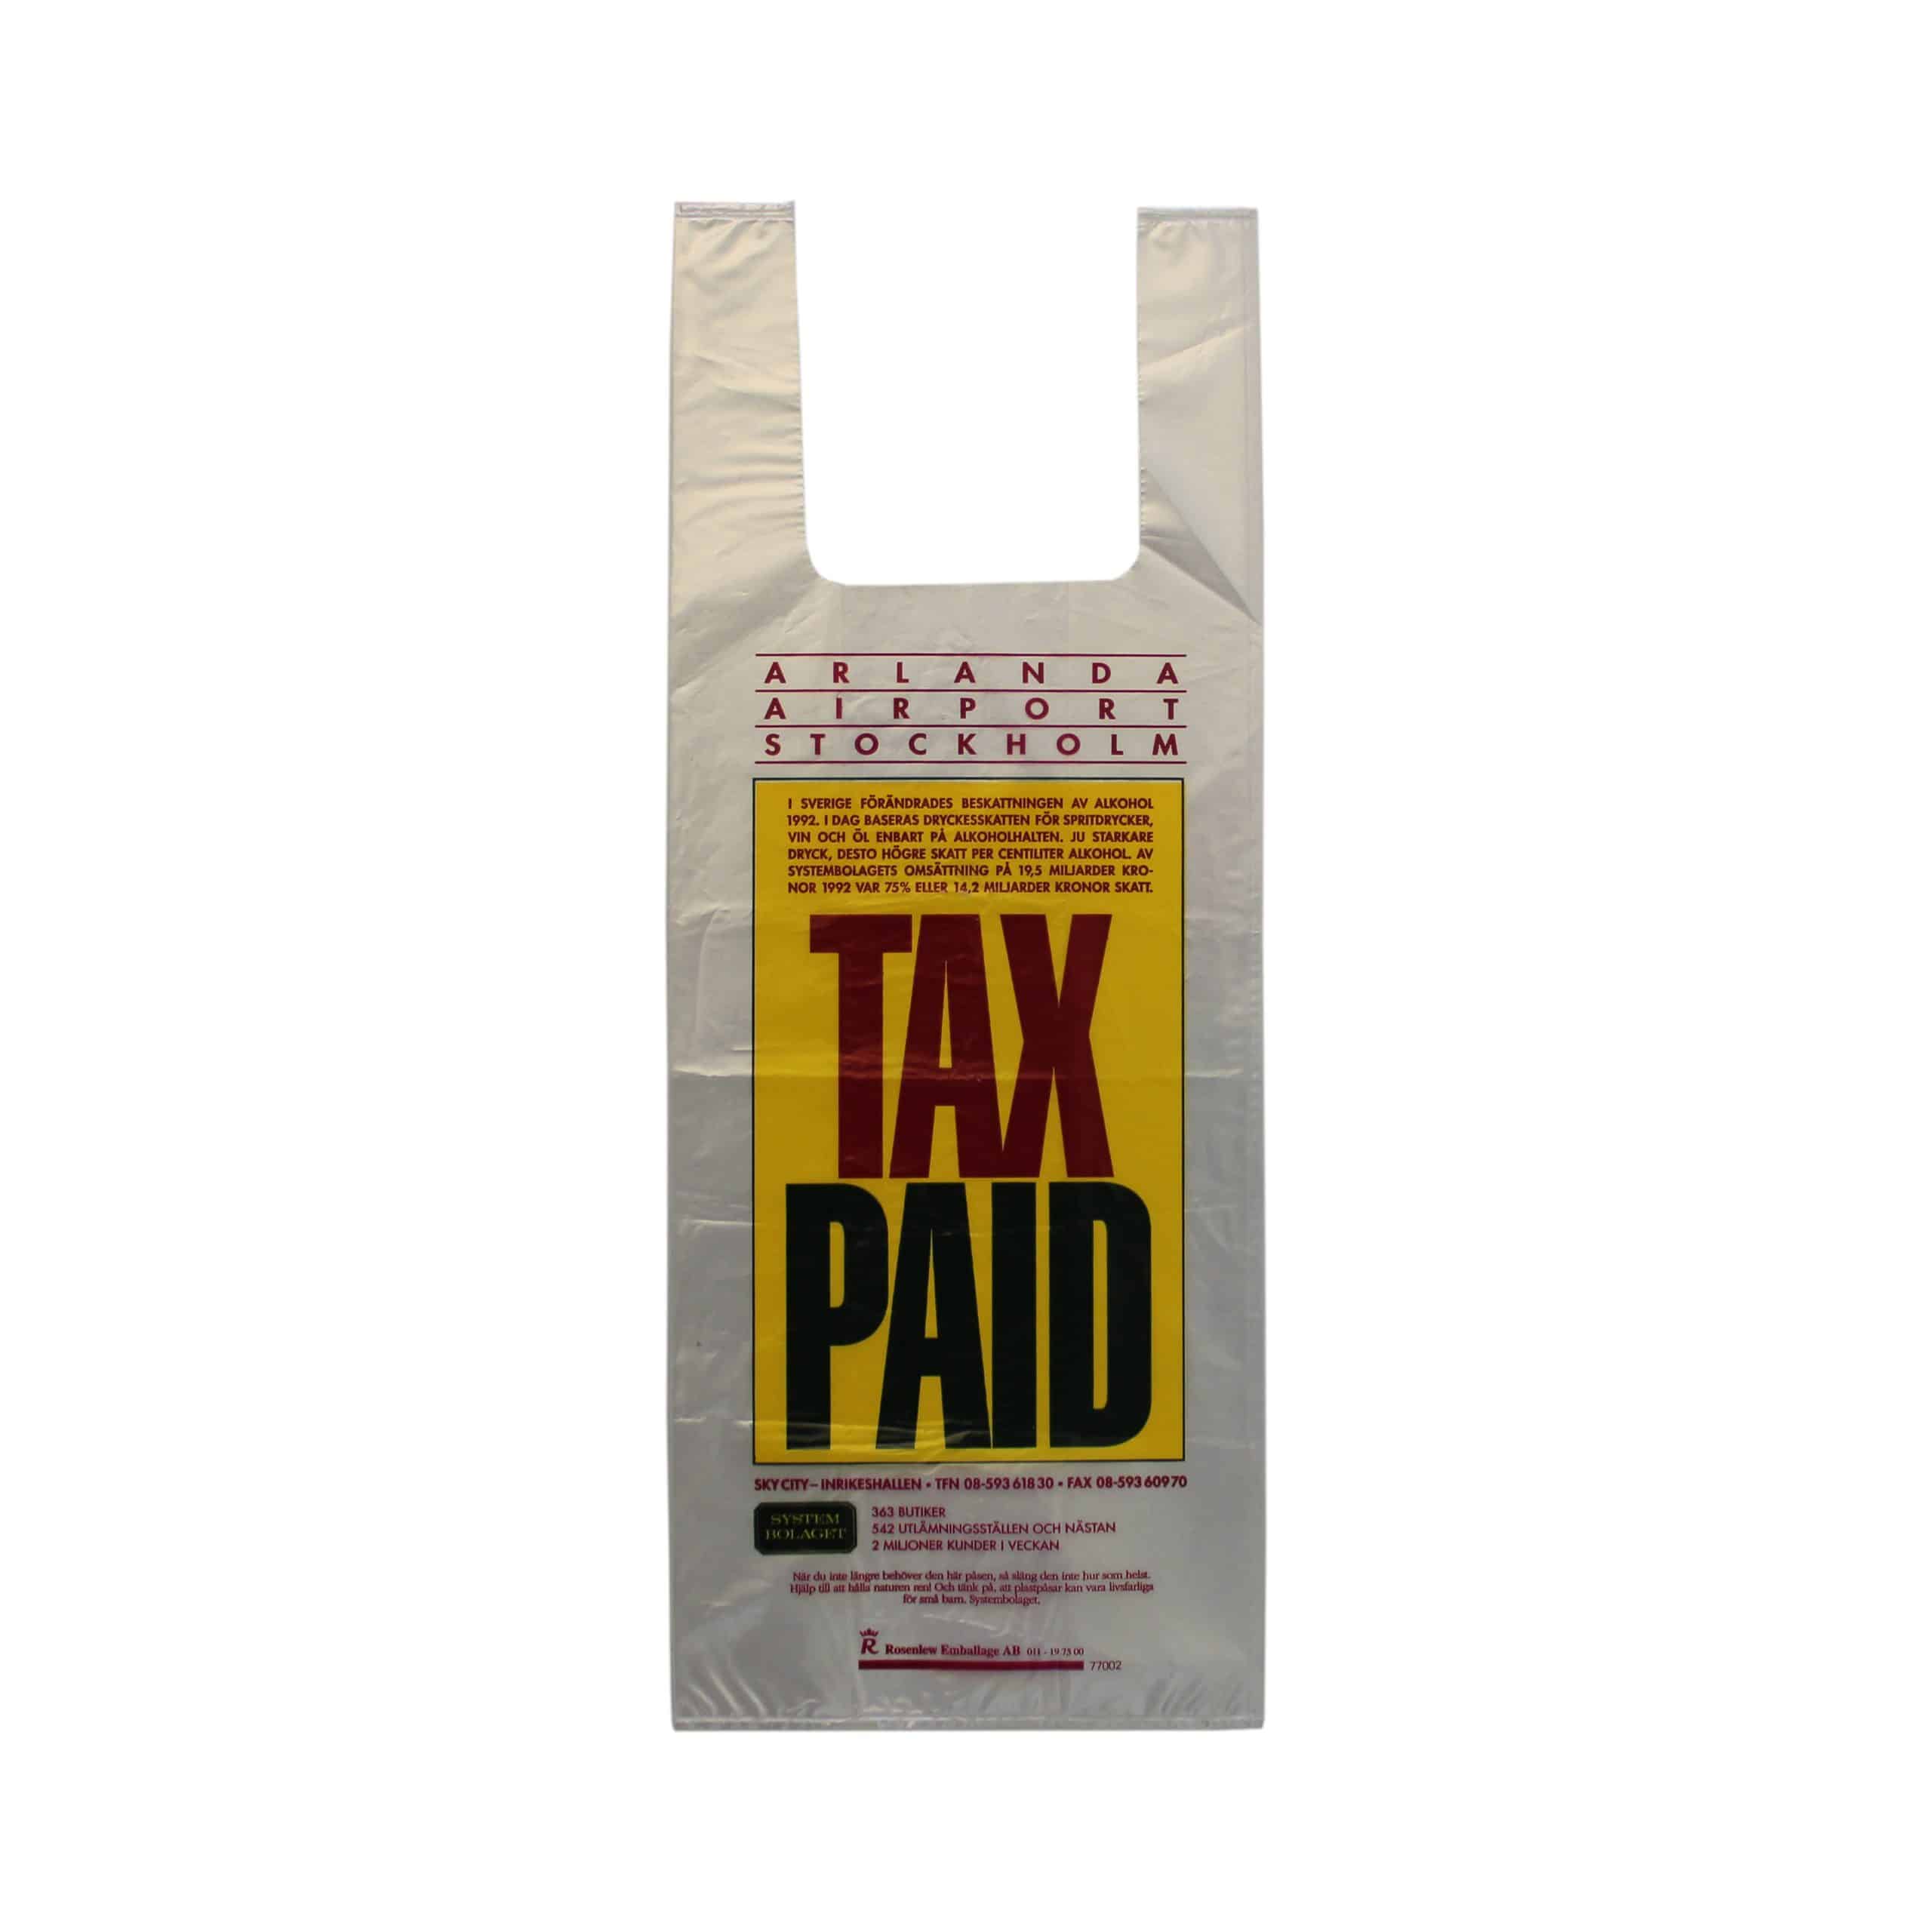 Genomskinlig plastpåse med olikfärgat tryckTax paid - taxfree-påse med information om ändrad alkoholbeskattning.Tidpunkt: 1993; Deponent: Systembolaget / Systembolaget AB; Motiv-ID: SYS010111